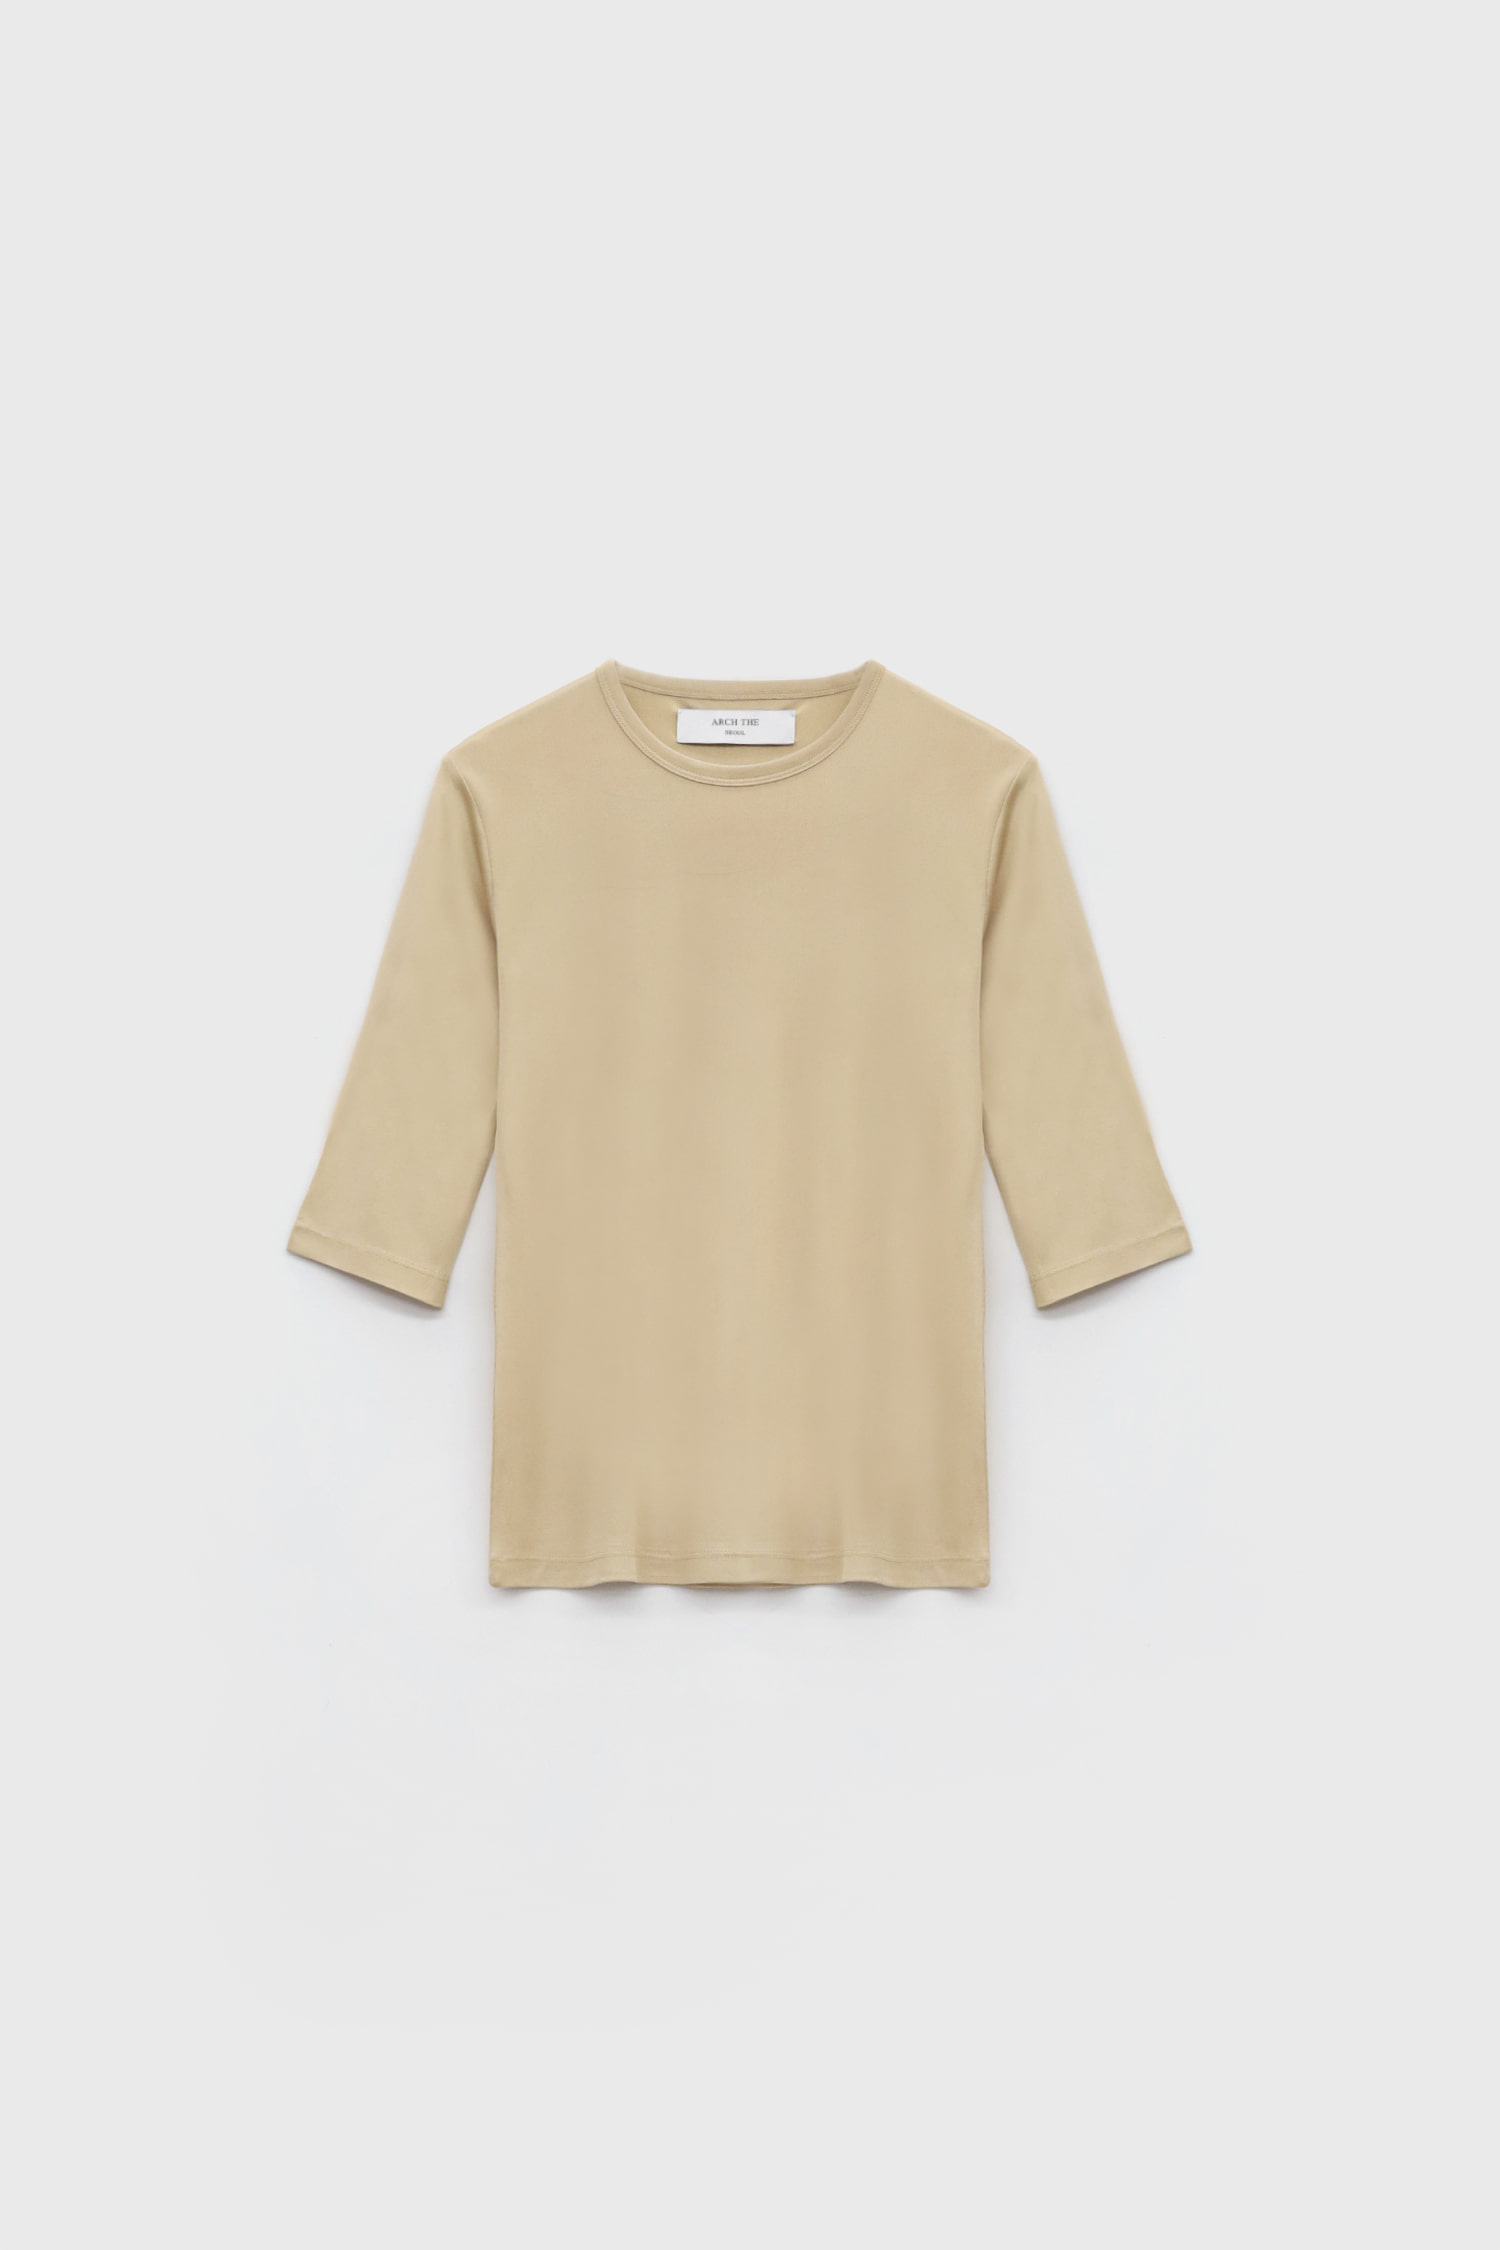 Silk Jersey Half Sleeve T-Shirt